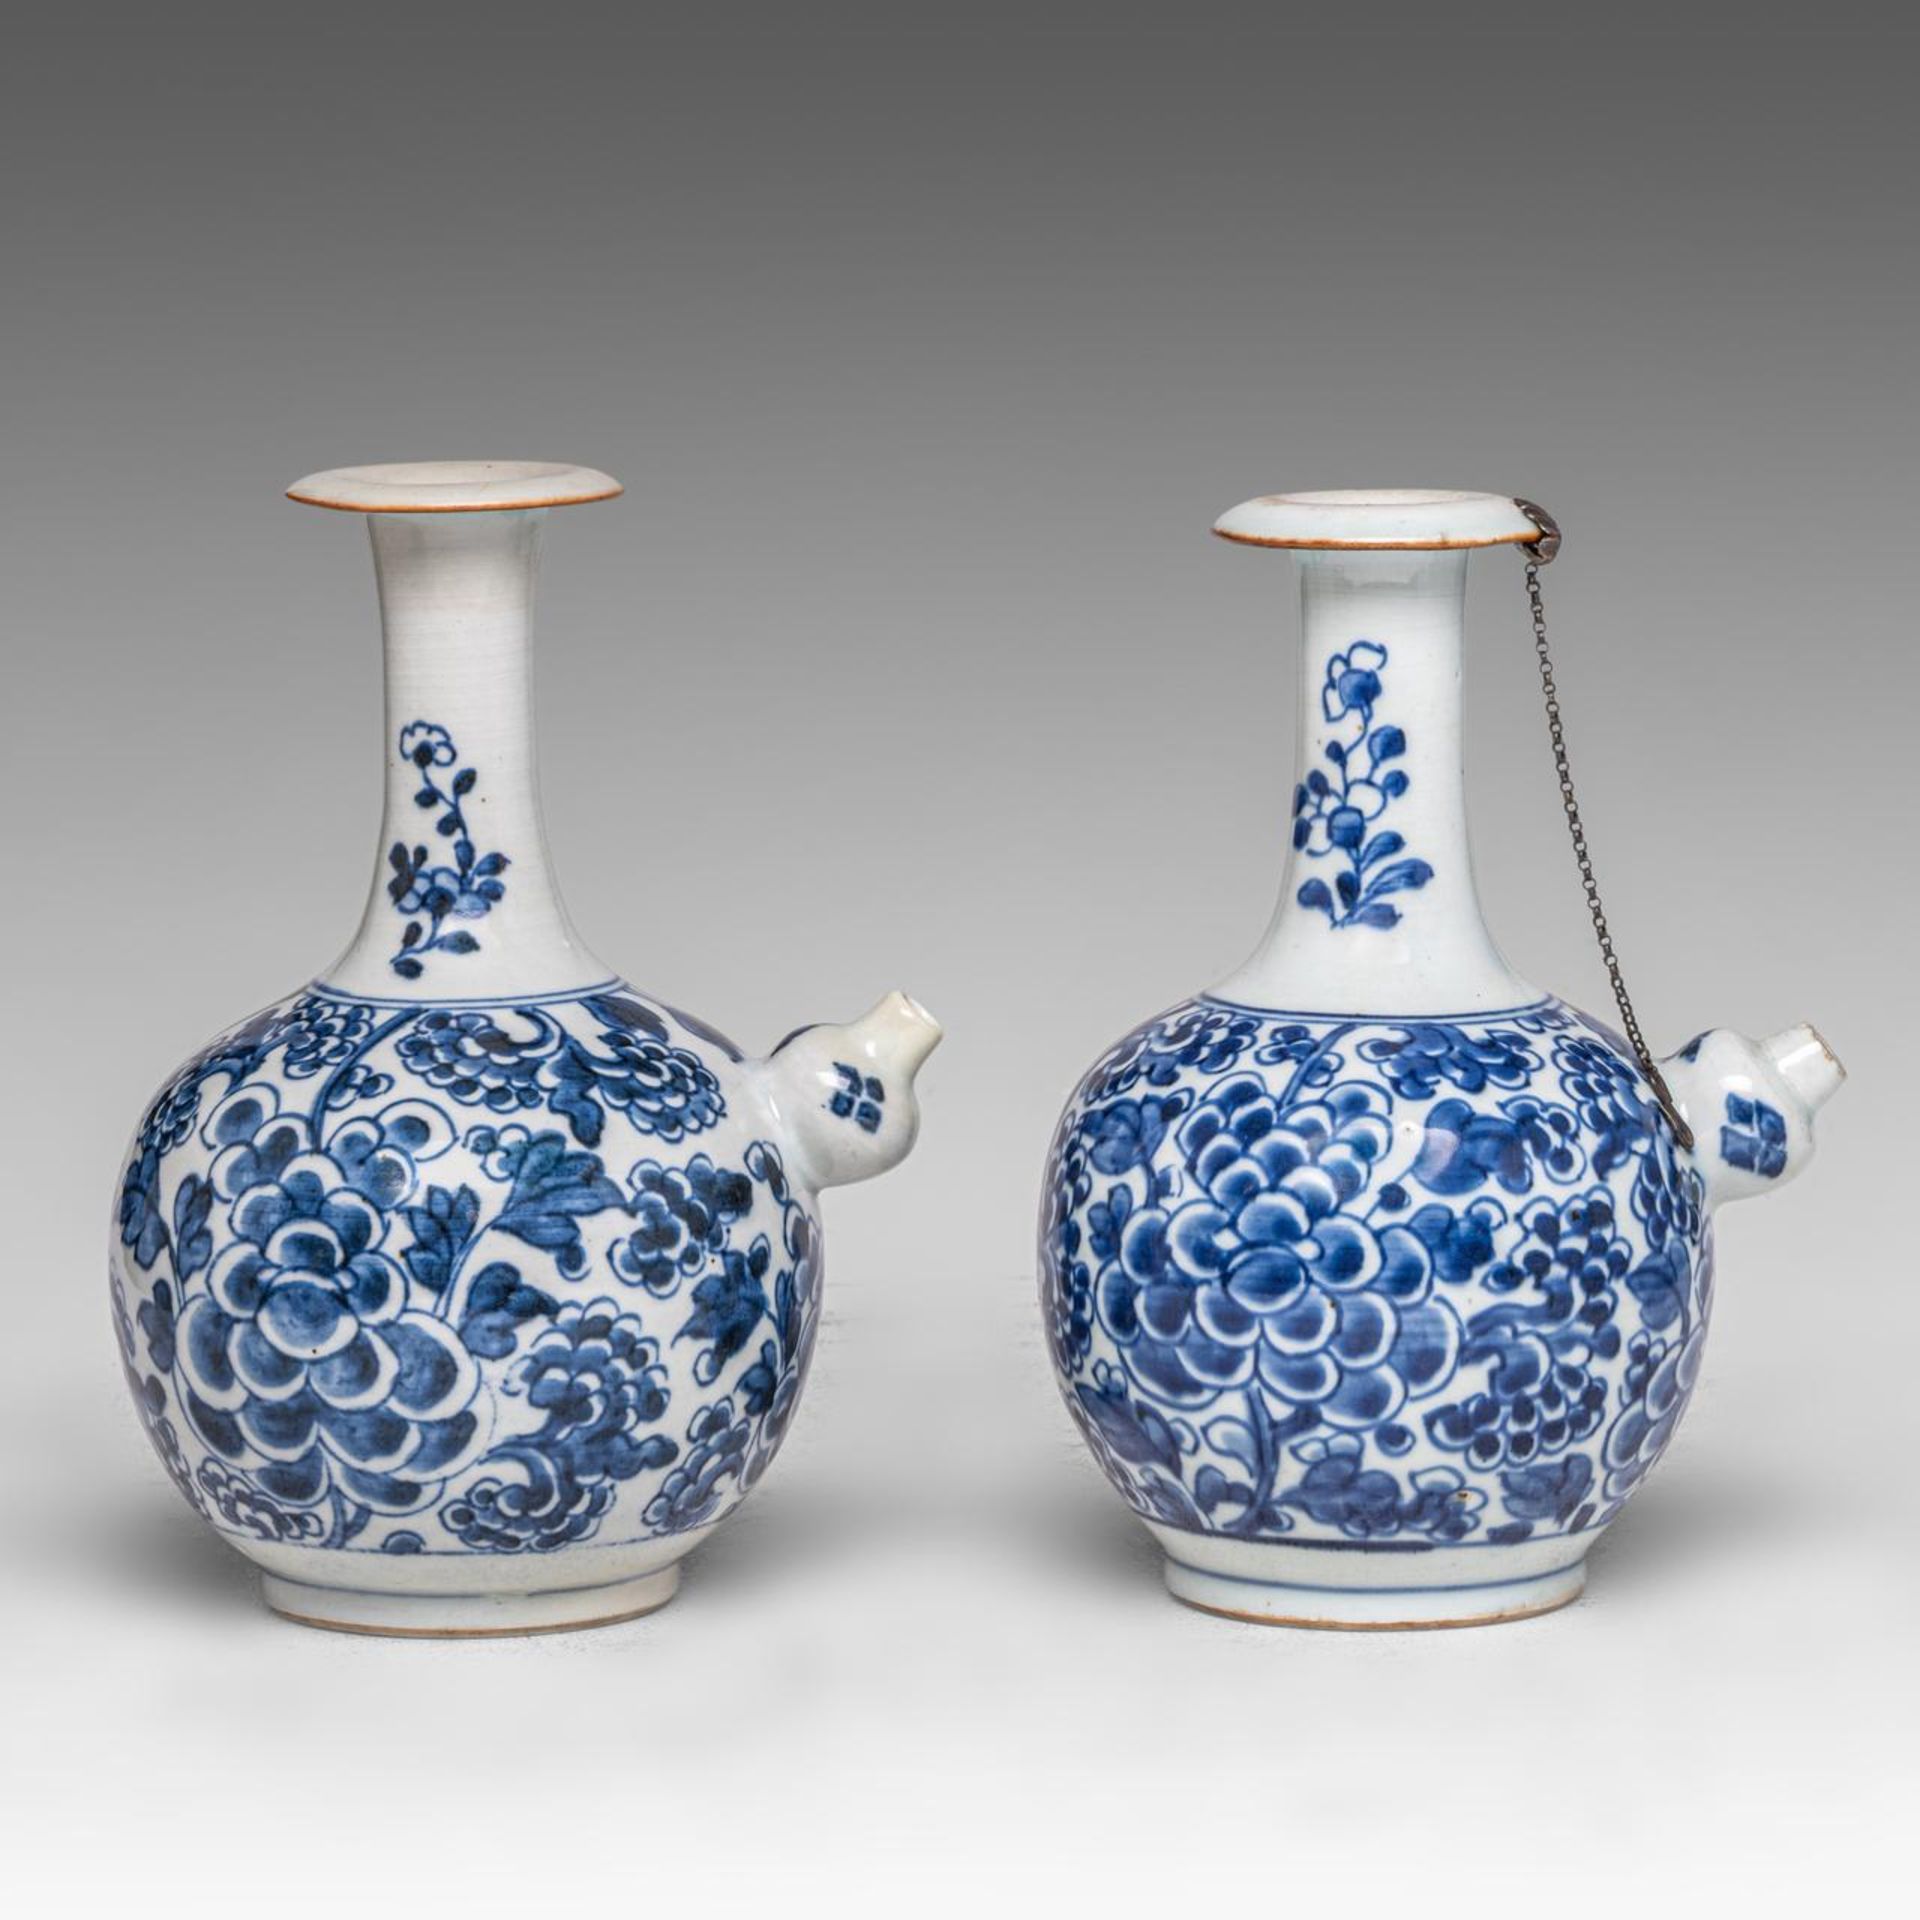 Two Chinese 'Peony scrolls' kendi jugs, Transitional/ Kangxi period, H 20 cm - Image 4 of 7